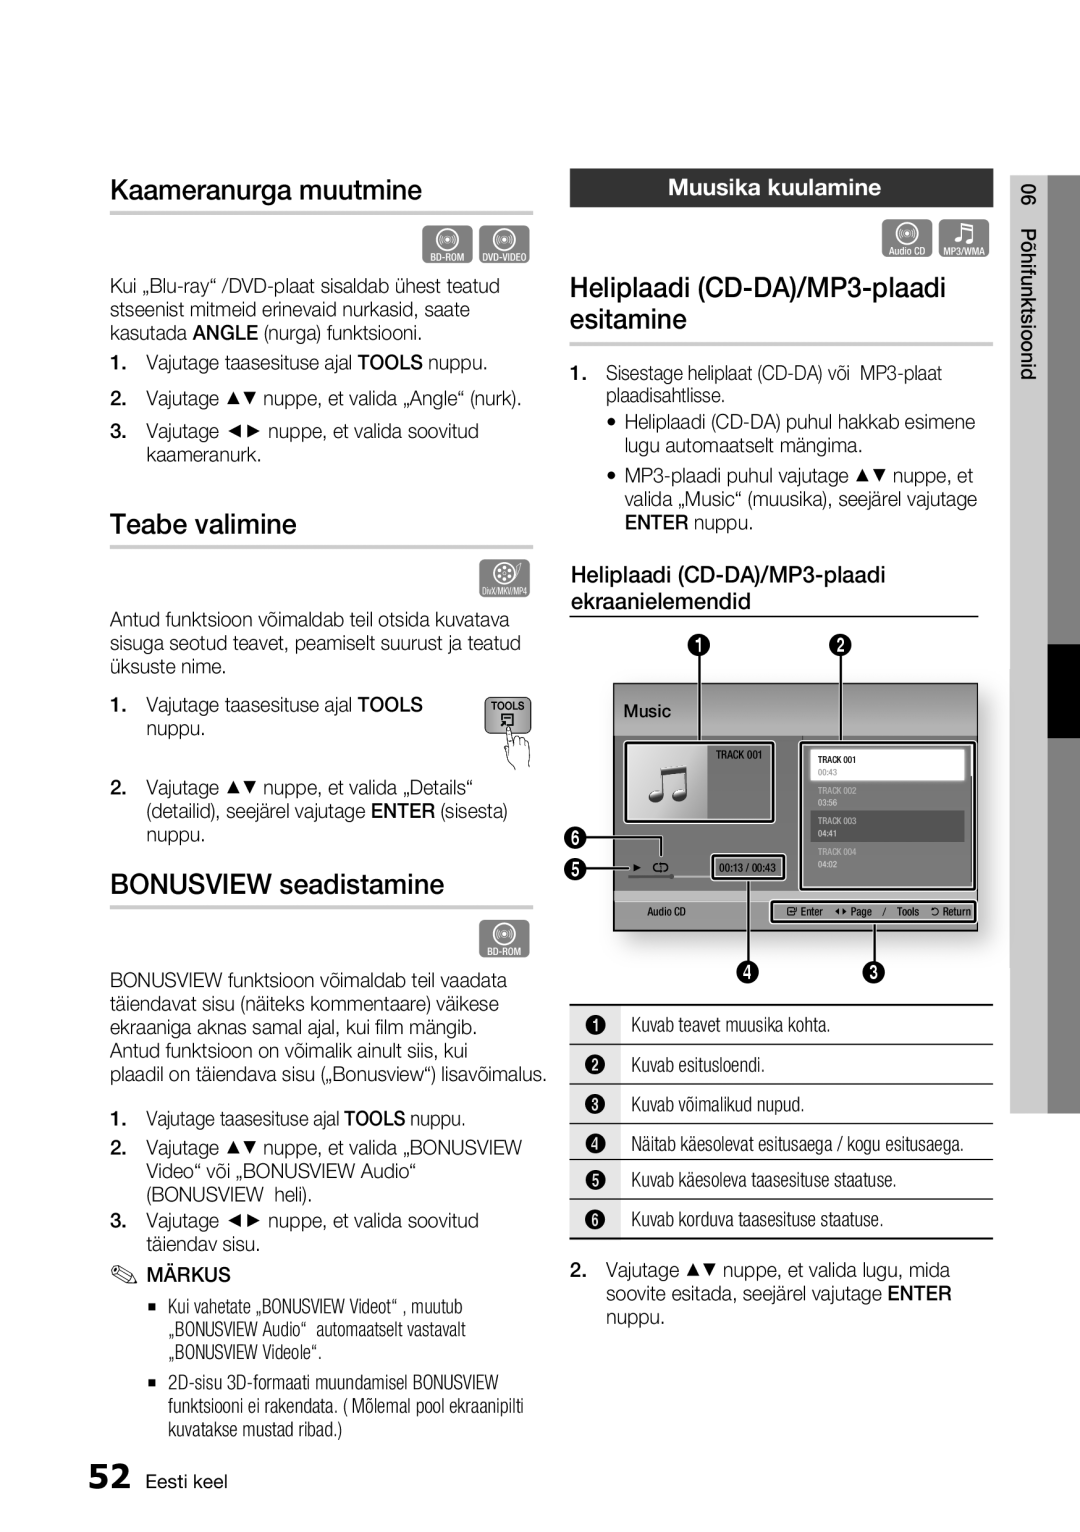 Samsung BD-E6300/EN manual Teabe valimine, BONUSVIEW seadistamine, Heliplaadi CD-DA/MP3-plaadi esitamine, Muusika kuulamine 